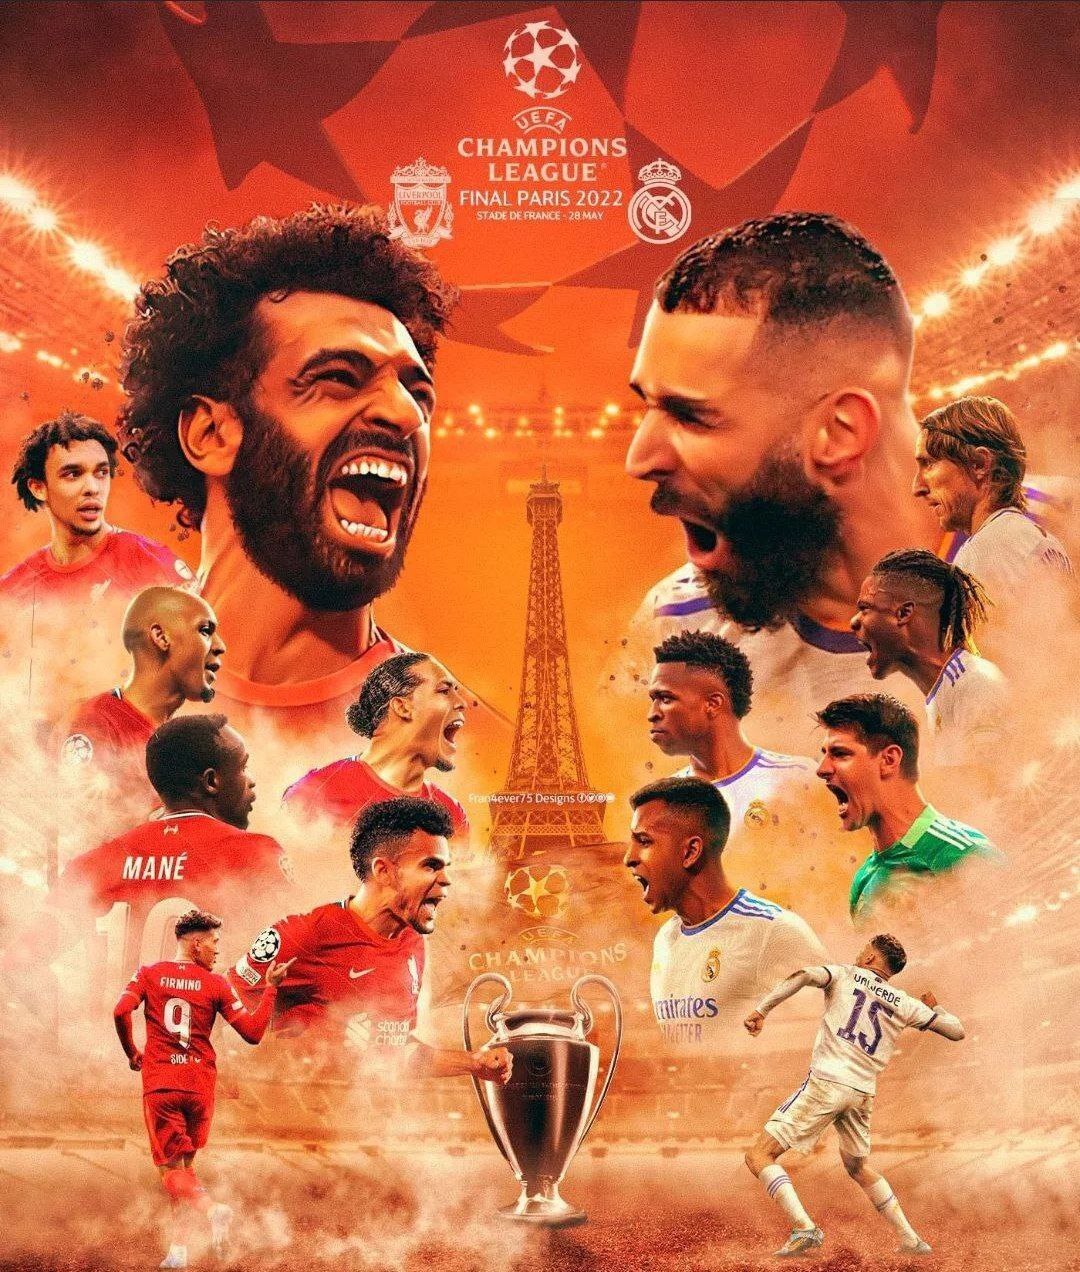 ساعت بازی رئال مادرید و لیورپول در فینال لیگ قهرمانان اروپا+ عکس پوستر